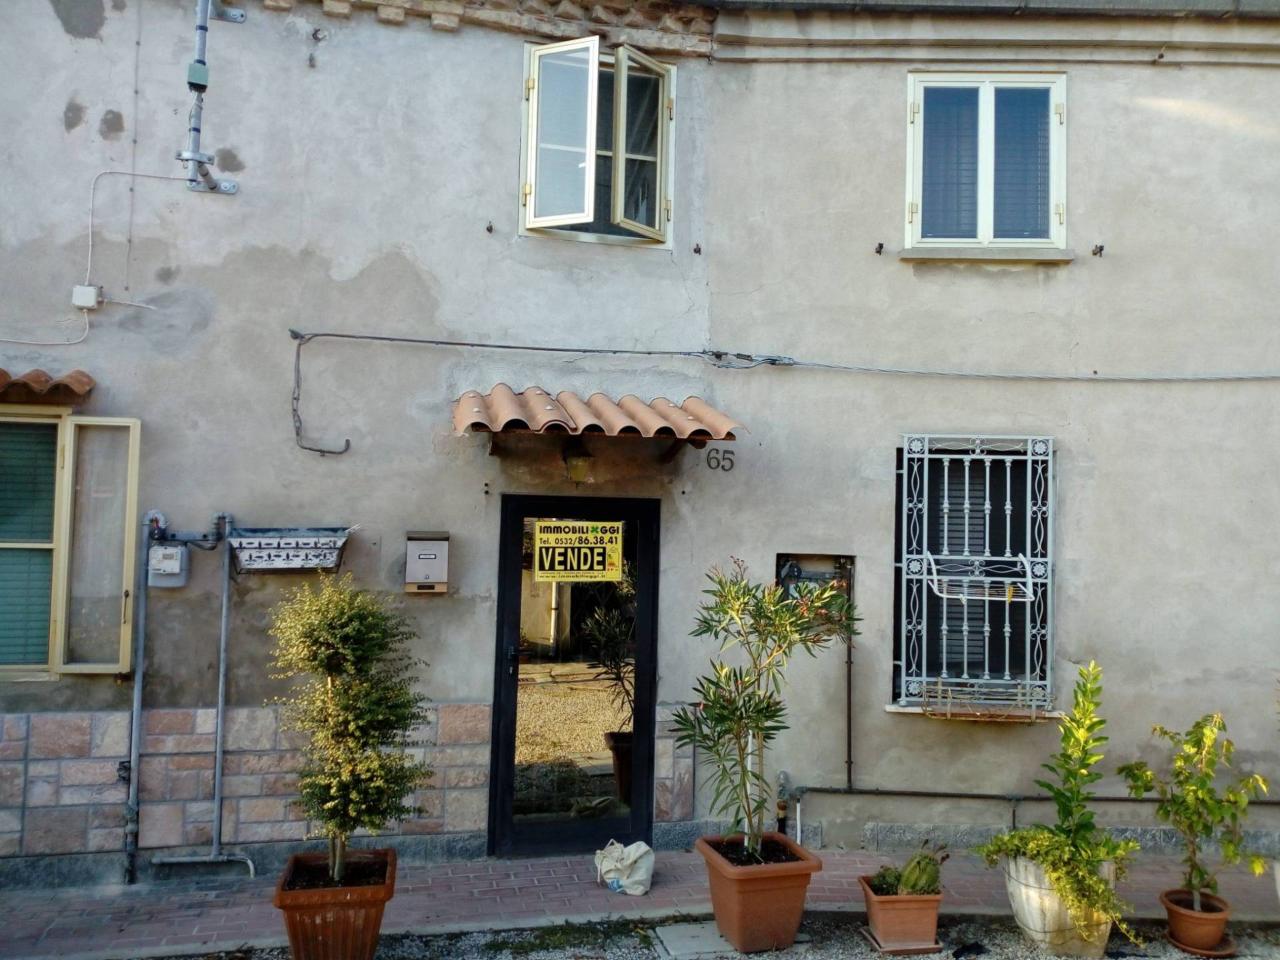 Casa indipendente in vendita a Copparo